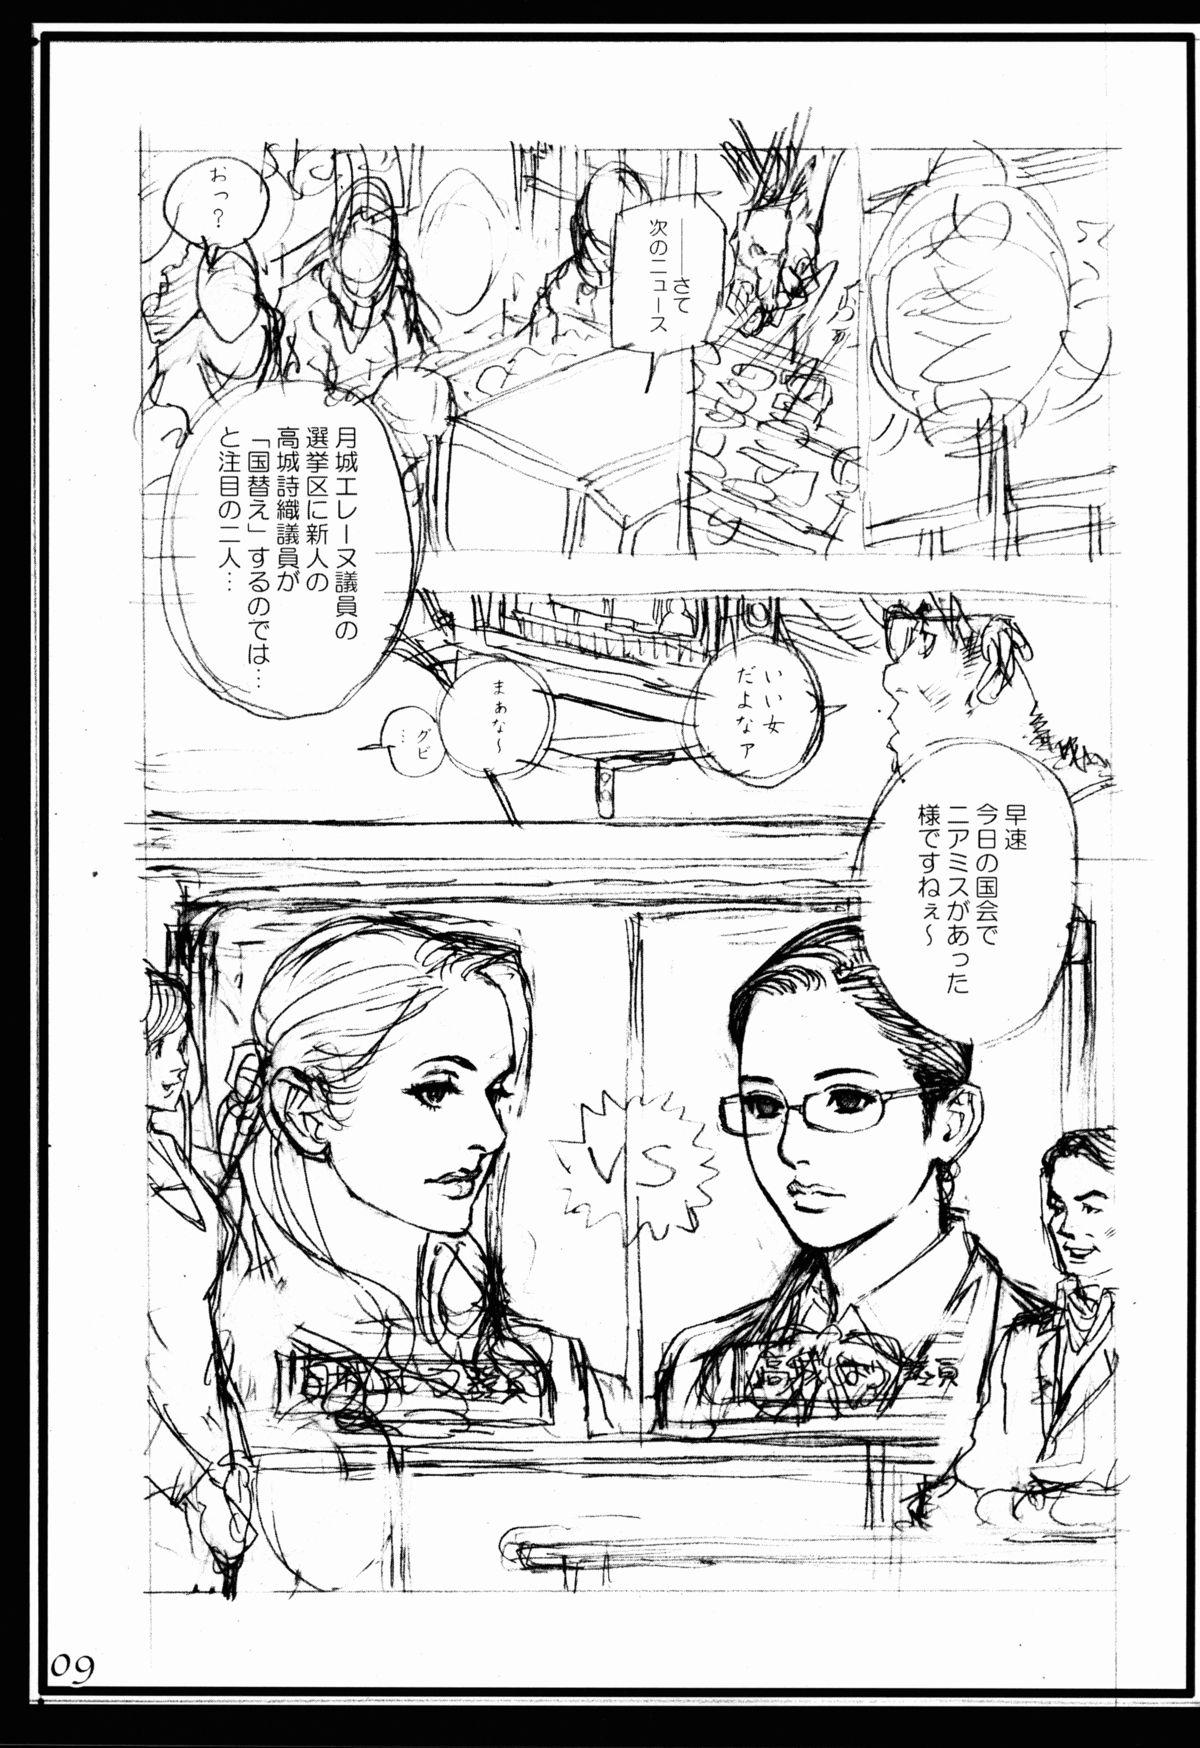 Staxxx Izayoi Seishin Zatsuga Shuu Bottom - Page 9